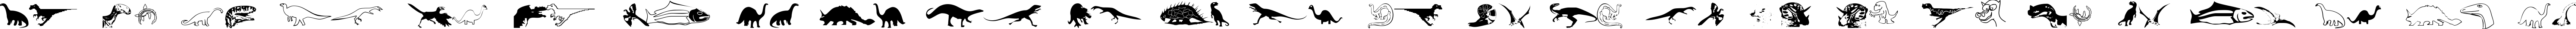 Пример написания английского алфавита шрифтом DinosoType